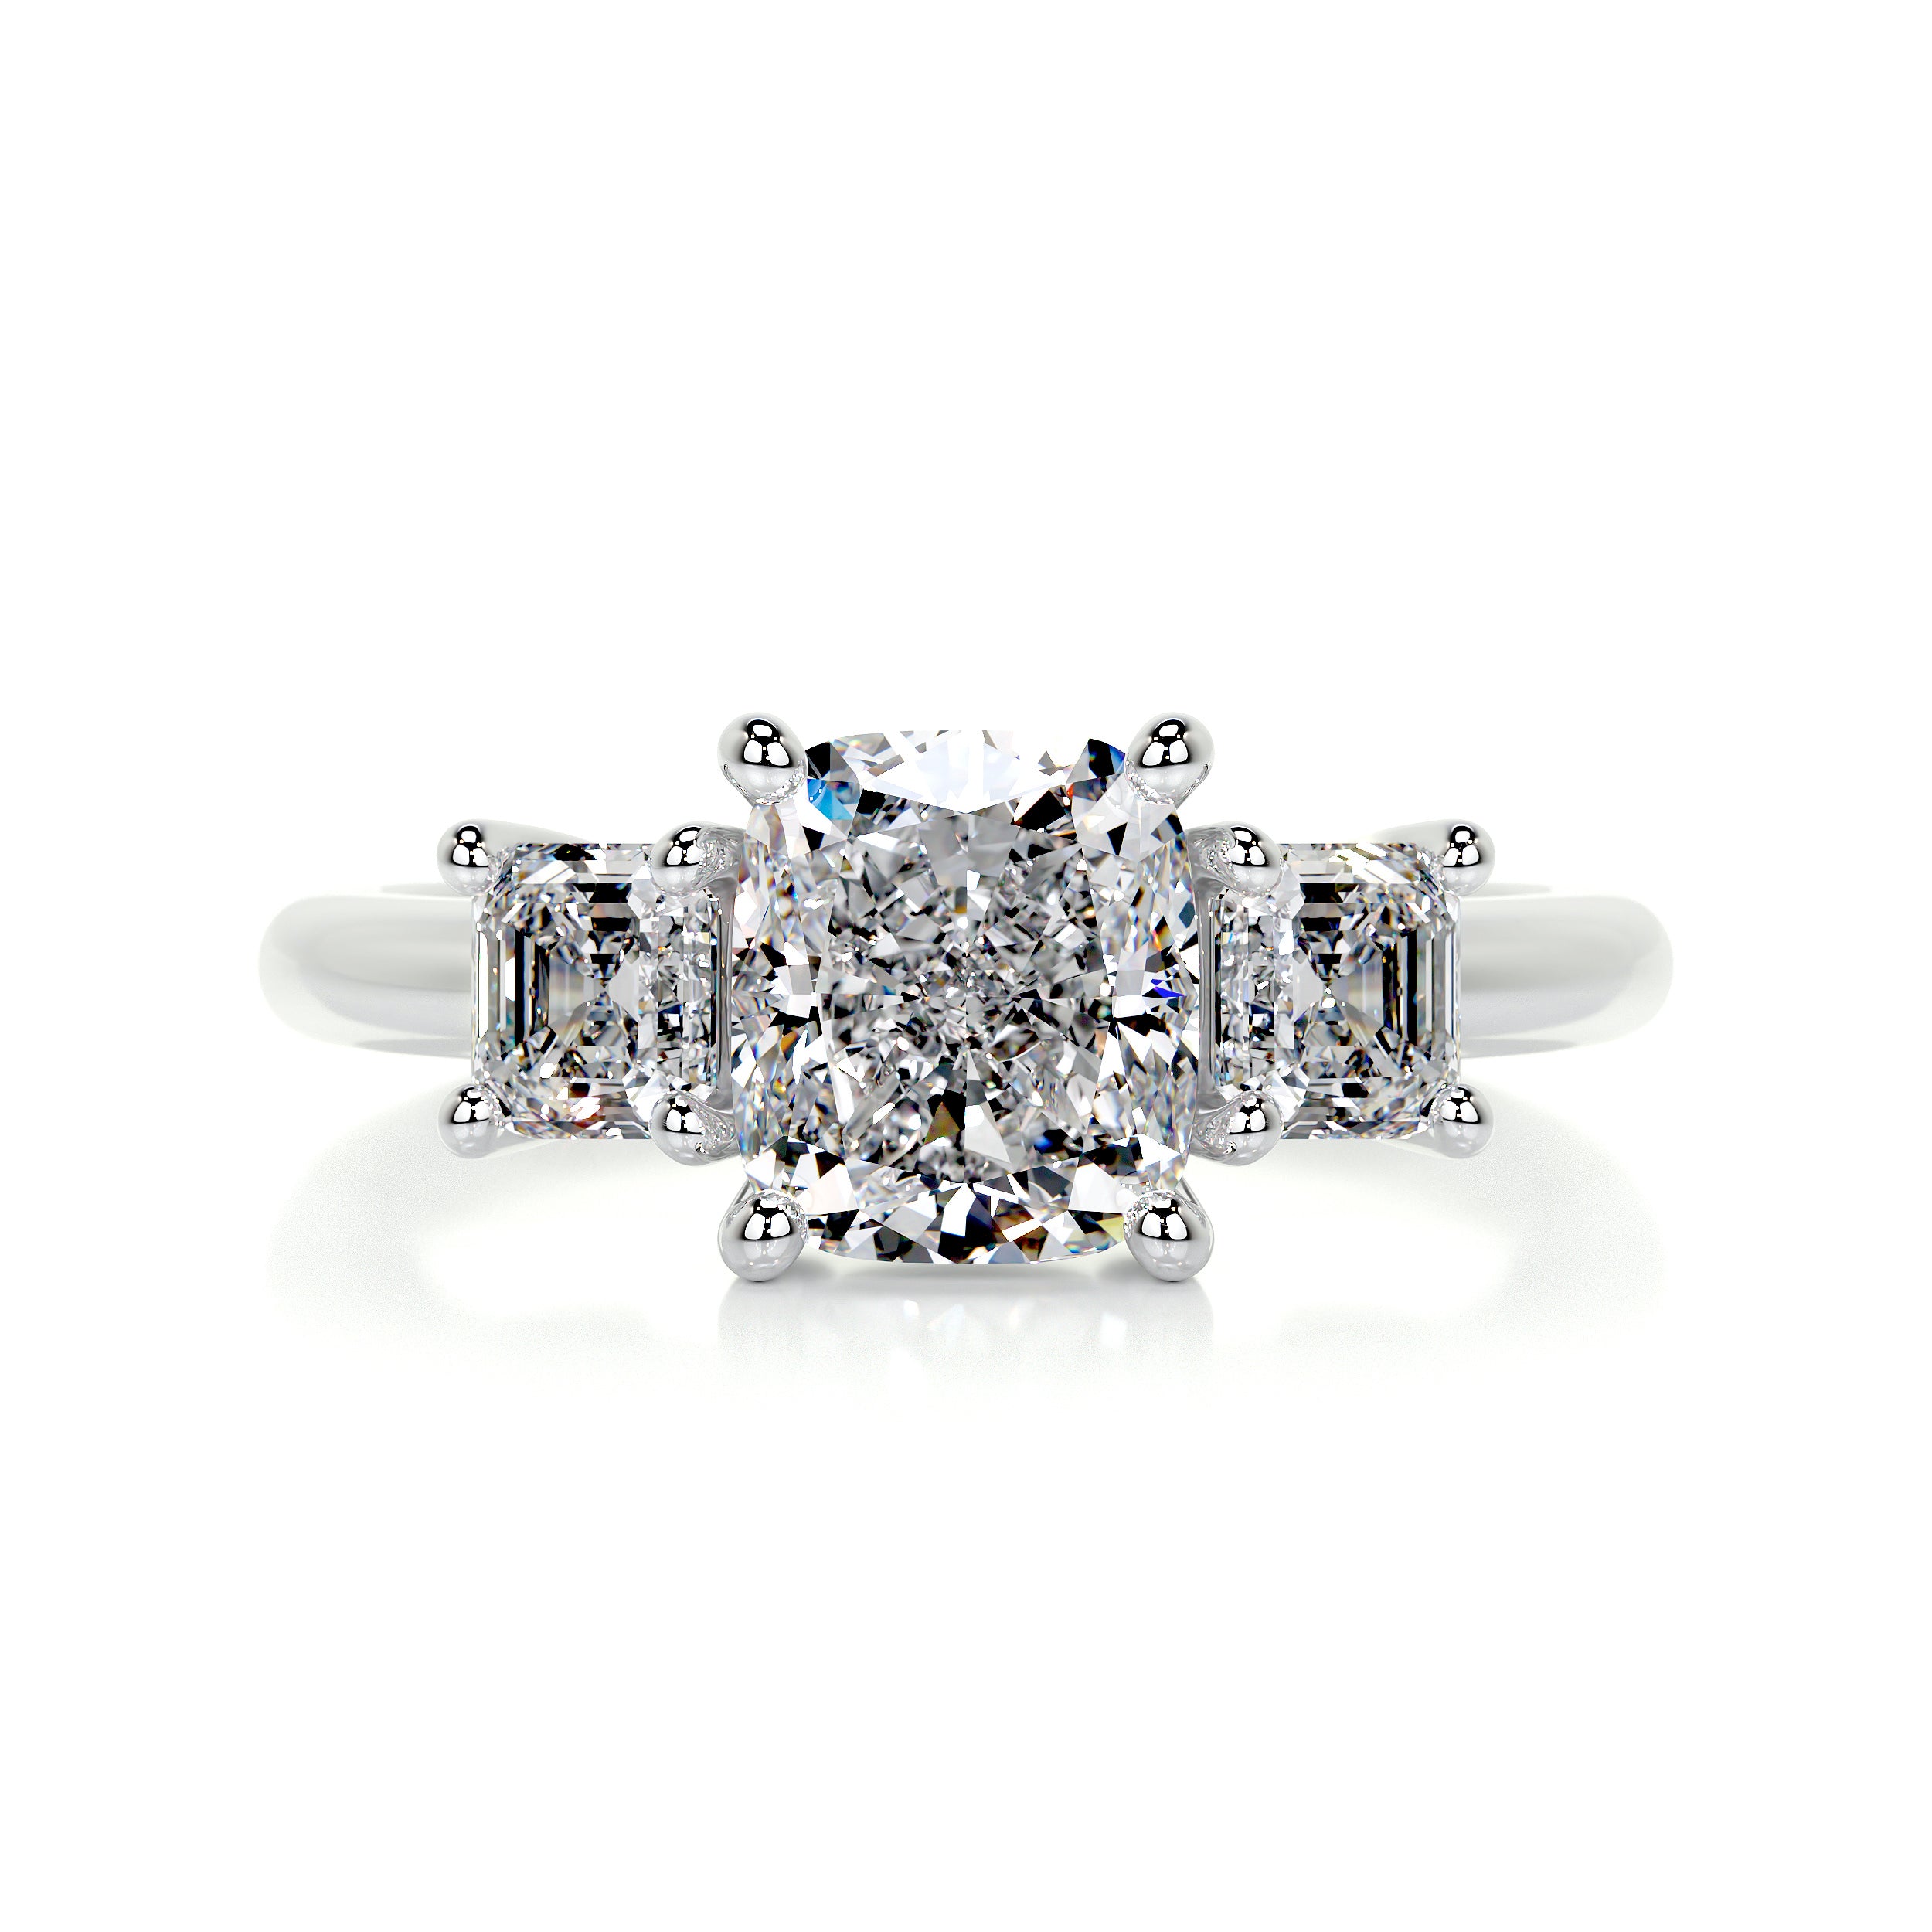 Amanda Diamond Engagement Ring   (3 Carat) -14K White Gold